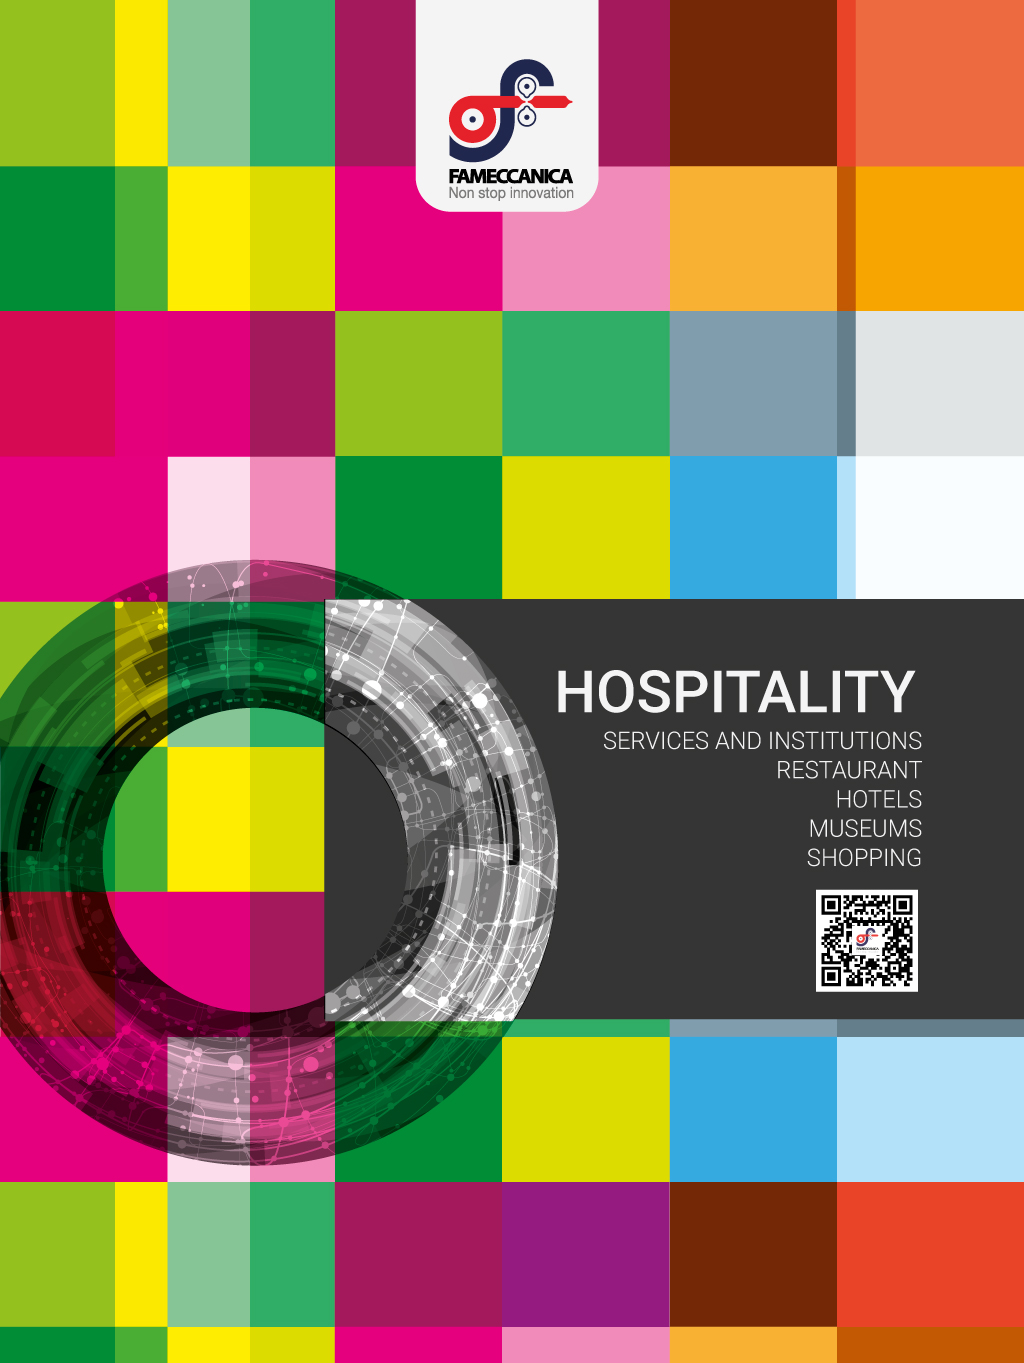 Ideazione e realizzazione opuscolo Hospitality per clienti e visitatori Fameccanica Data